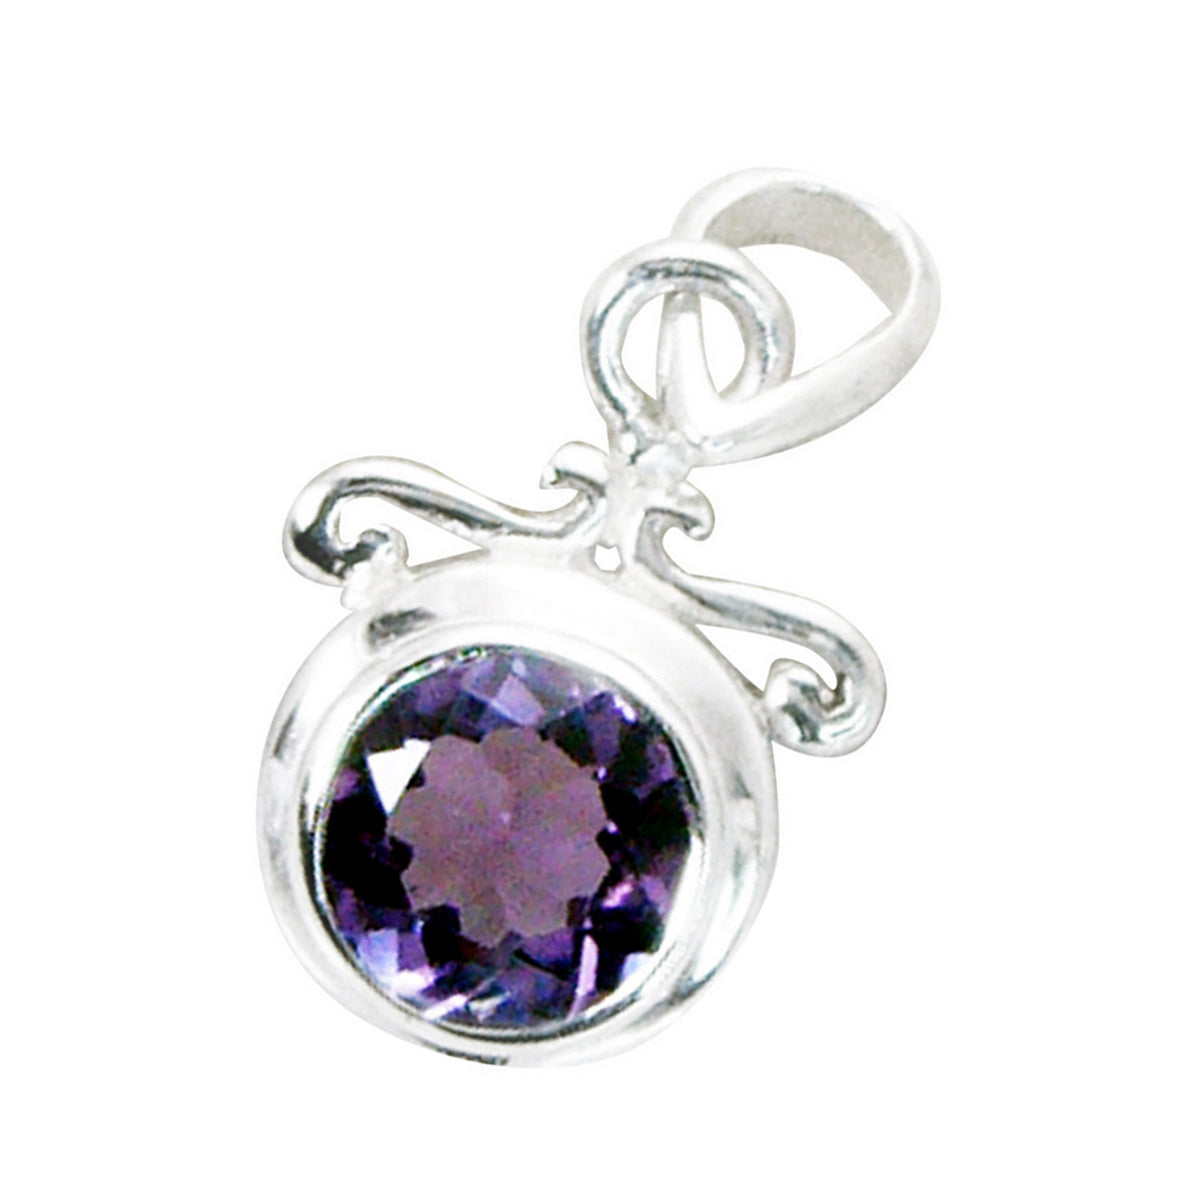 Riyo magnifique pierre précieuse ronde à facettes améthyste violette pendentif en argent sterling 953 cadeau d'anniversaire